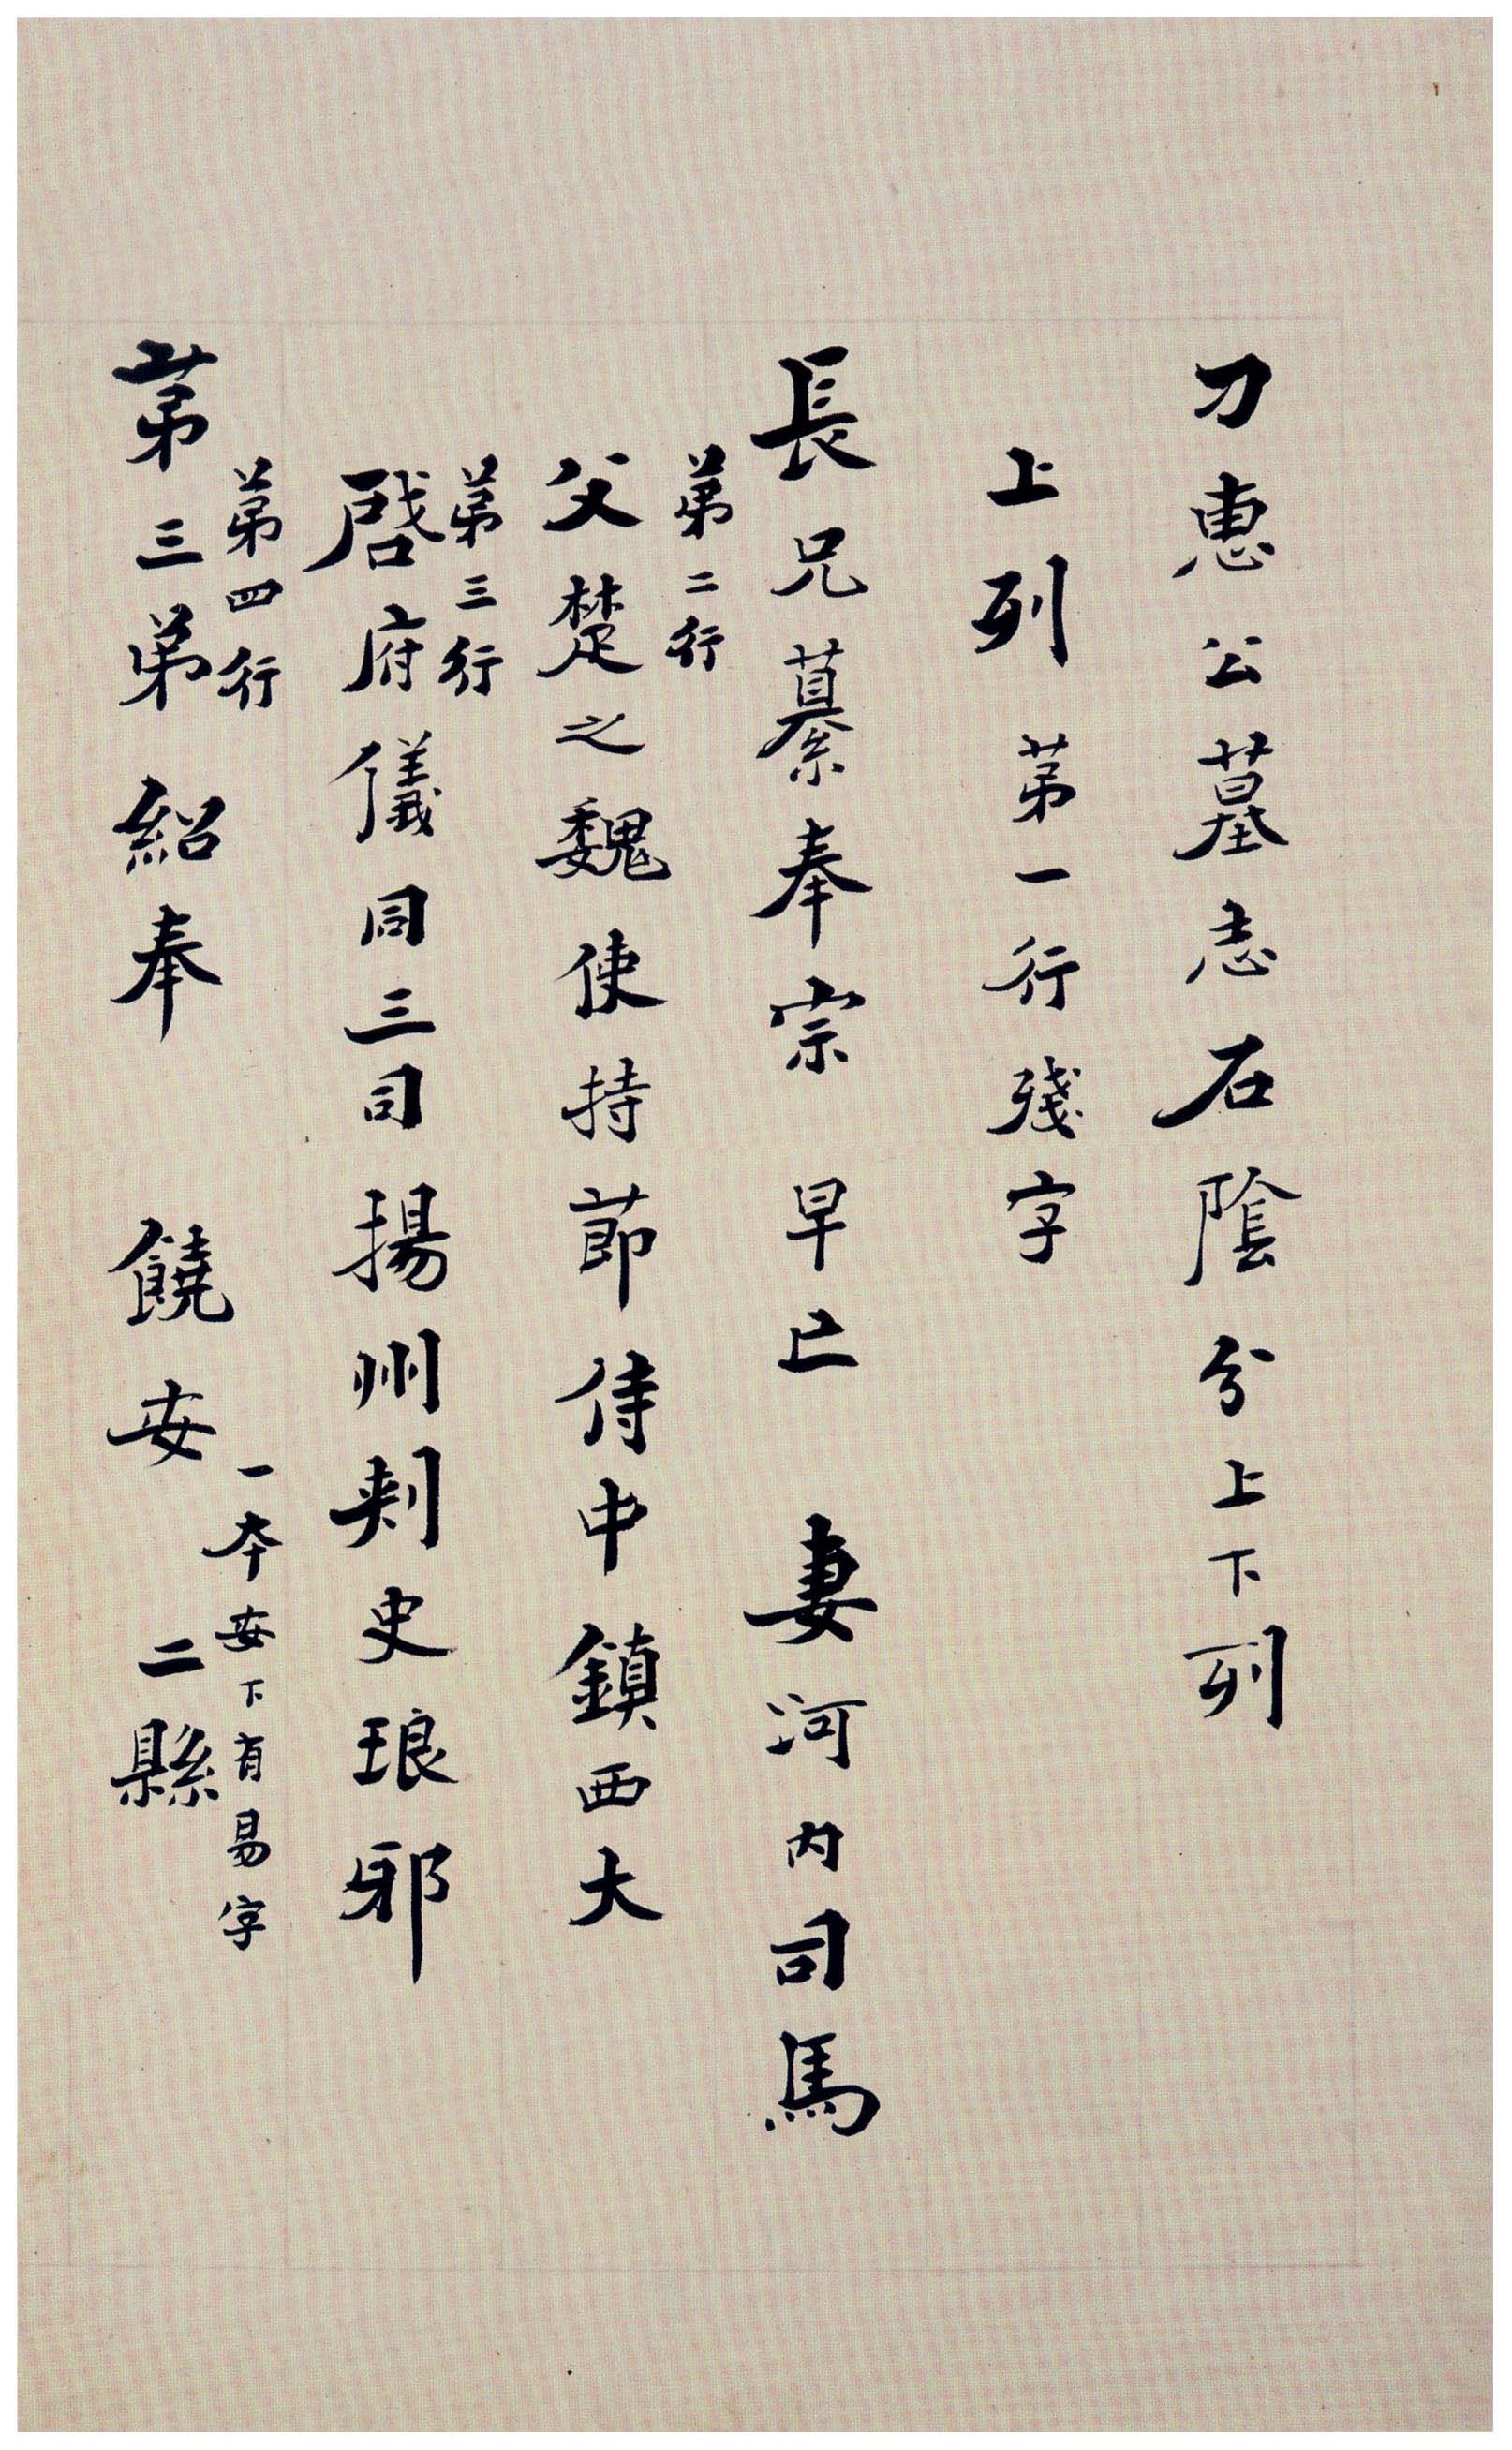 北魏《刁遵墓志》题签与题跋(图22)